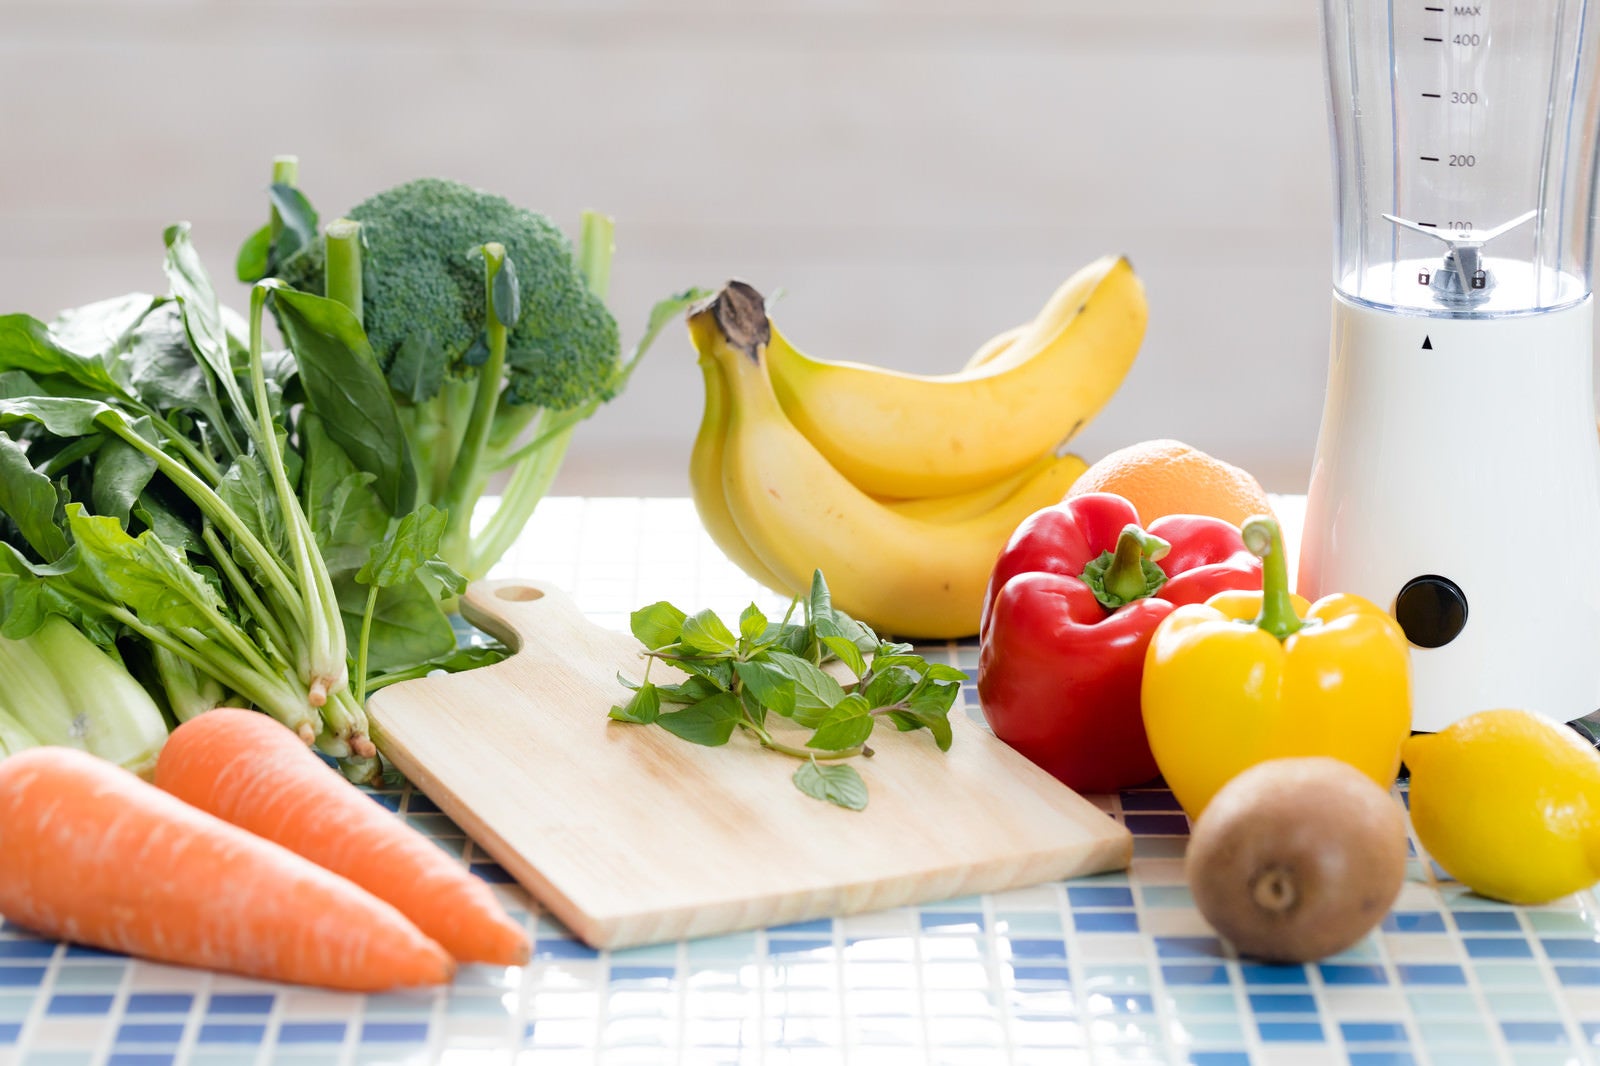 「スムージー用の果物と野菜類」の写真